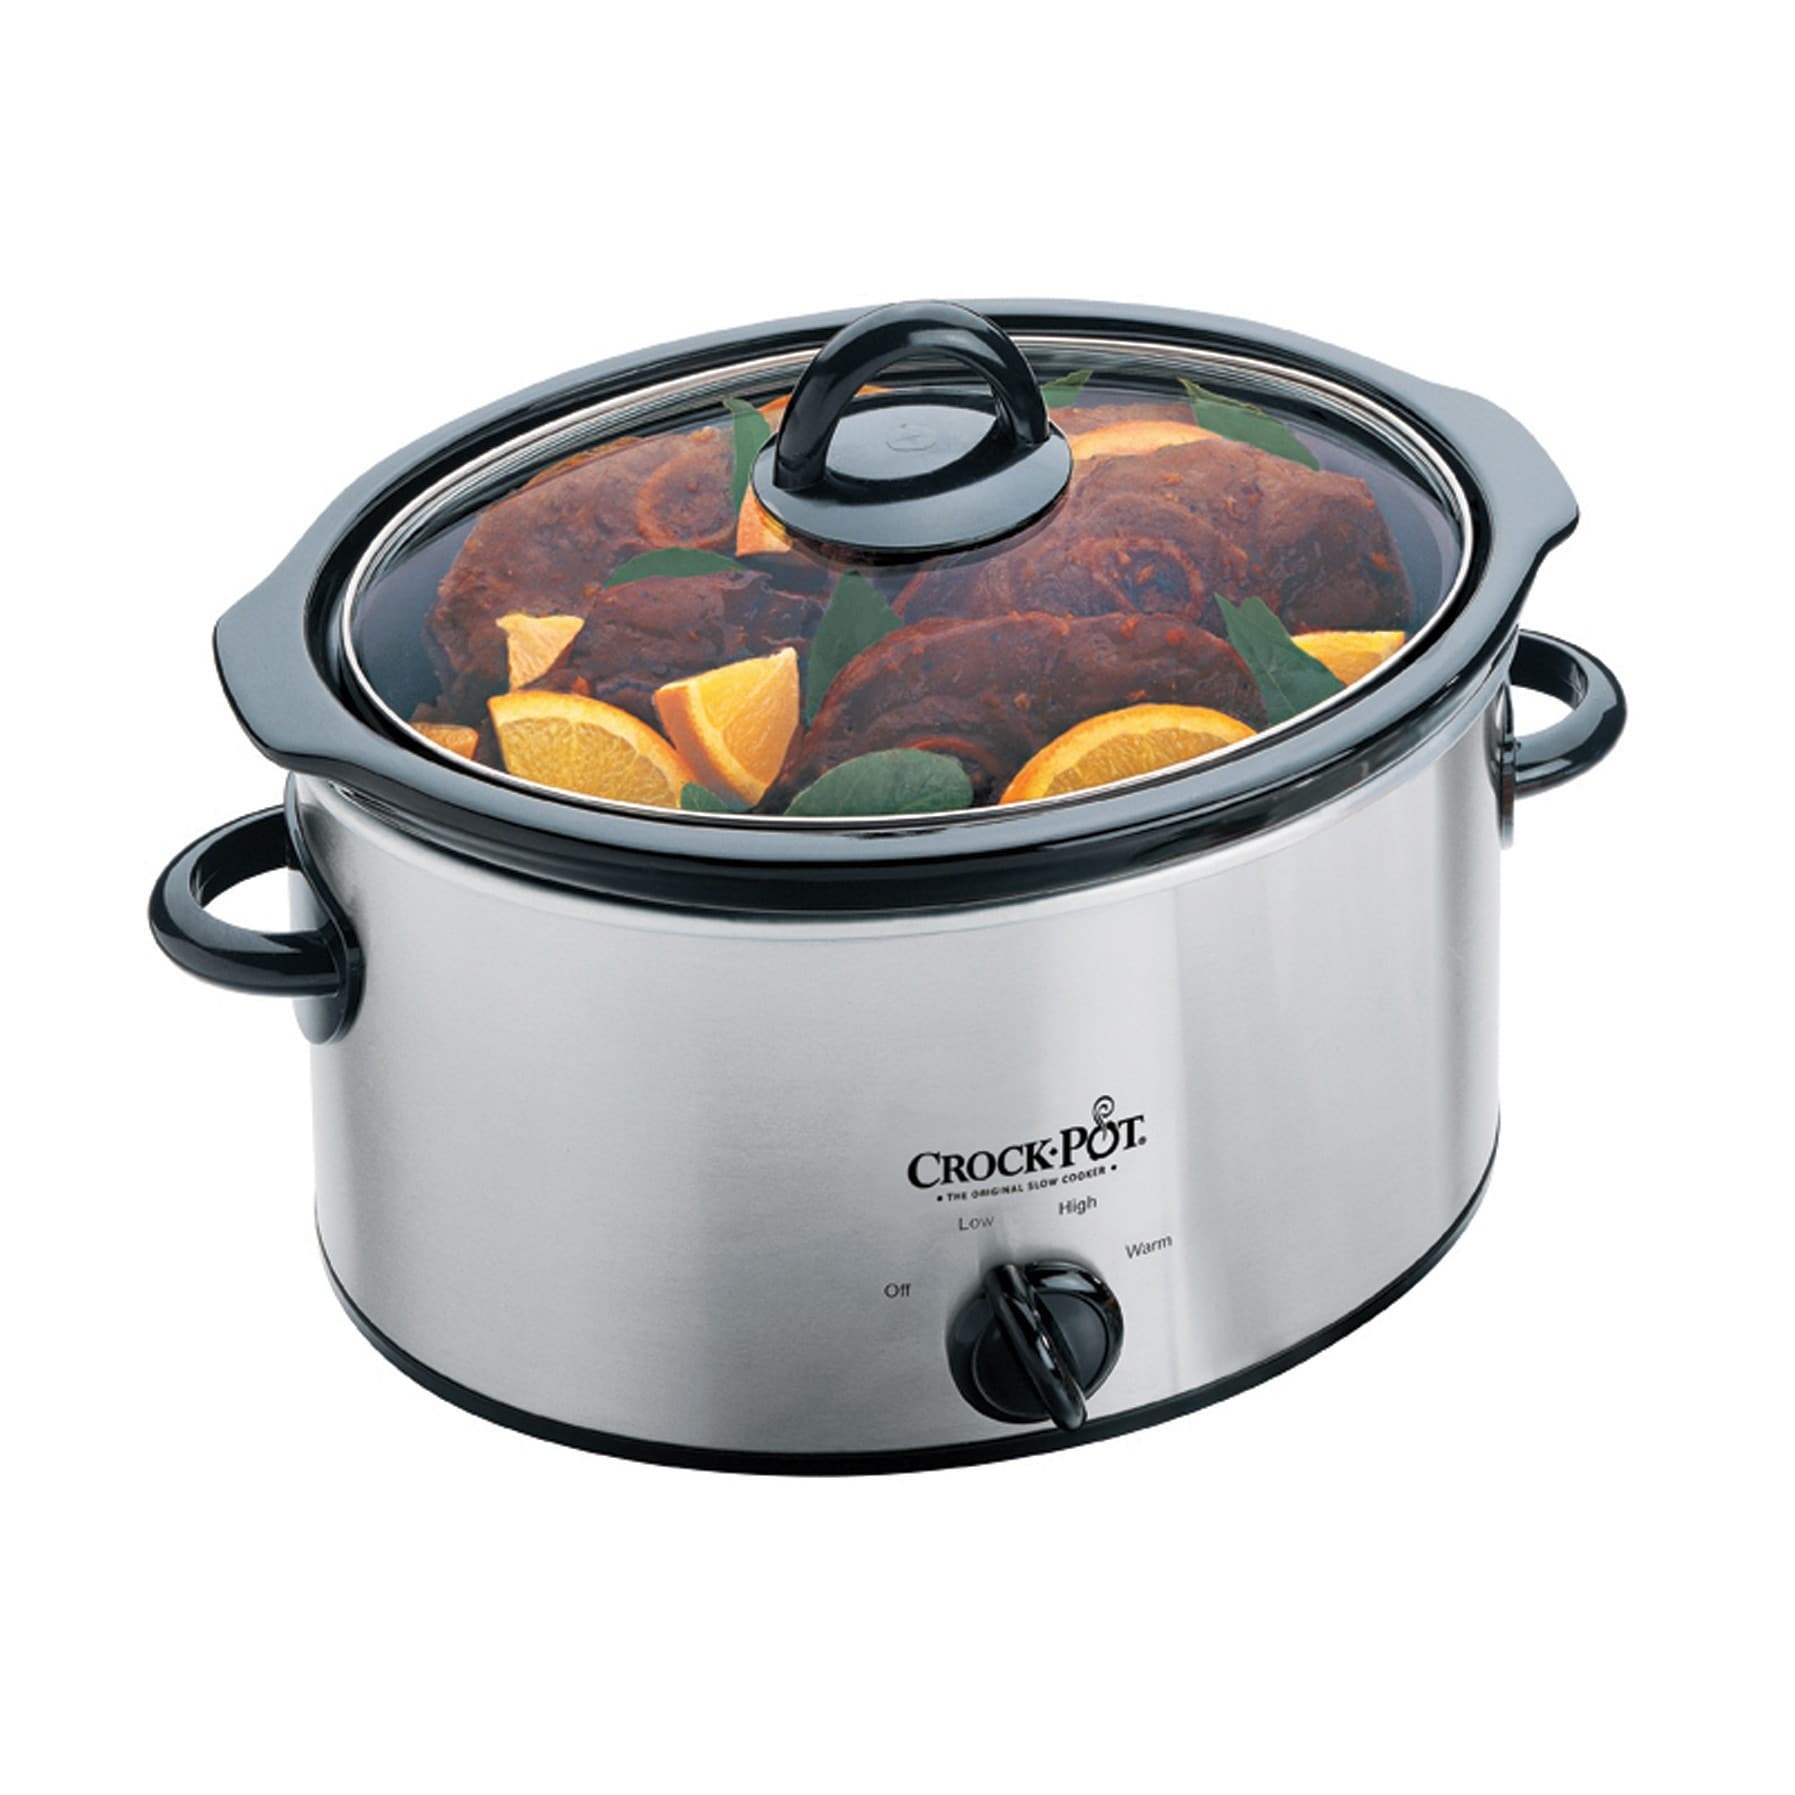 Crock-Pot slow cooker | Elgiganten